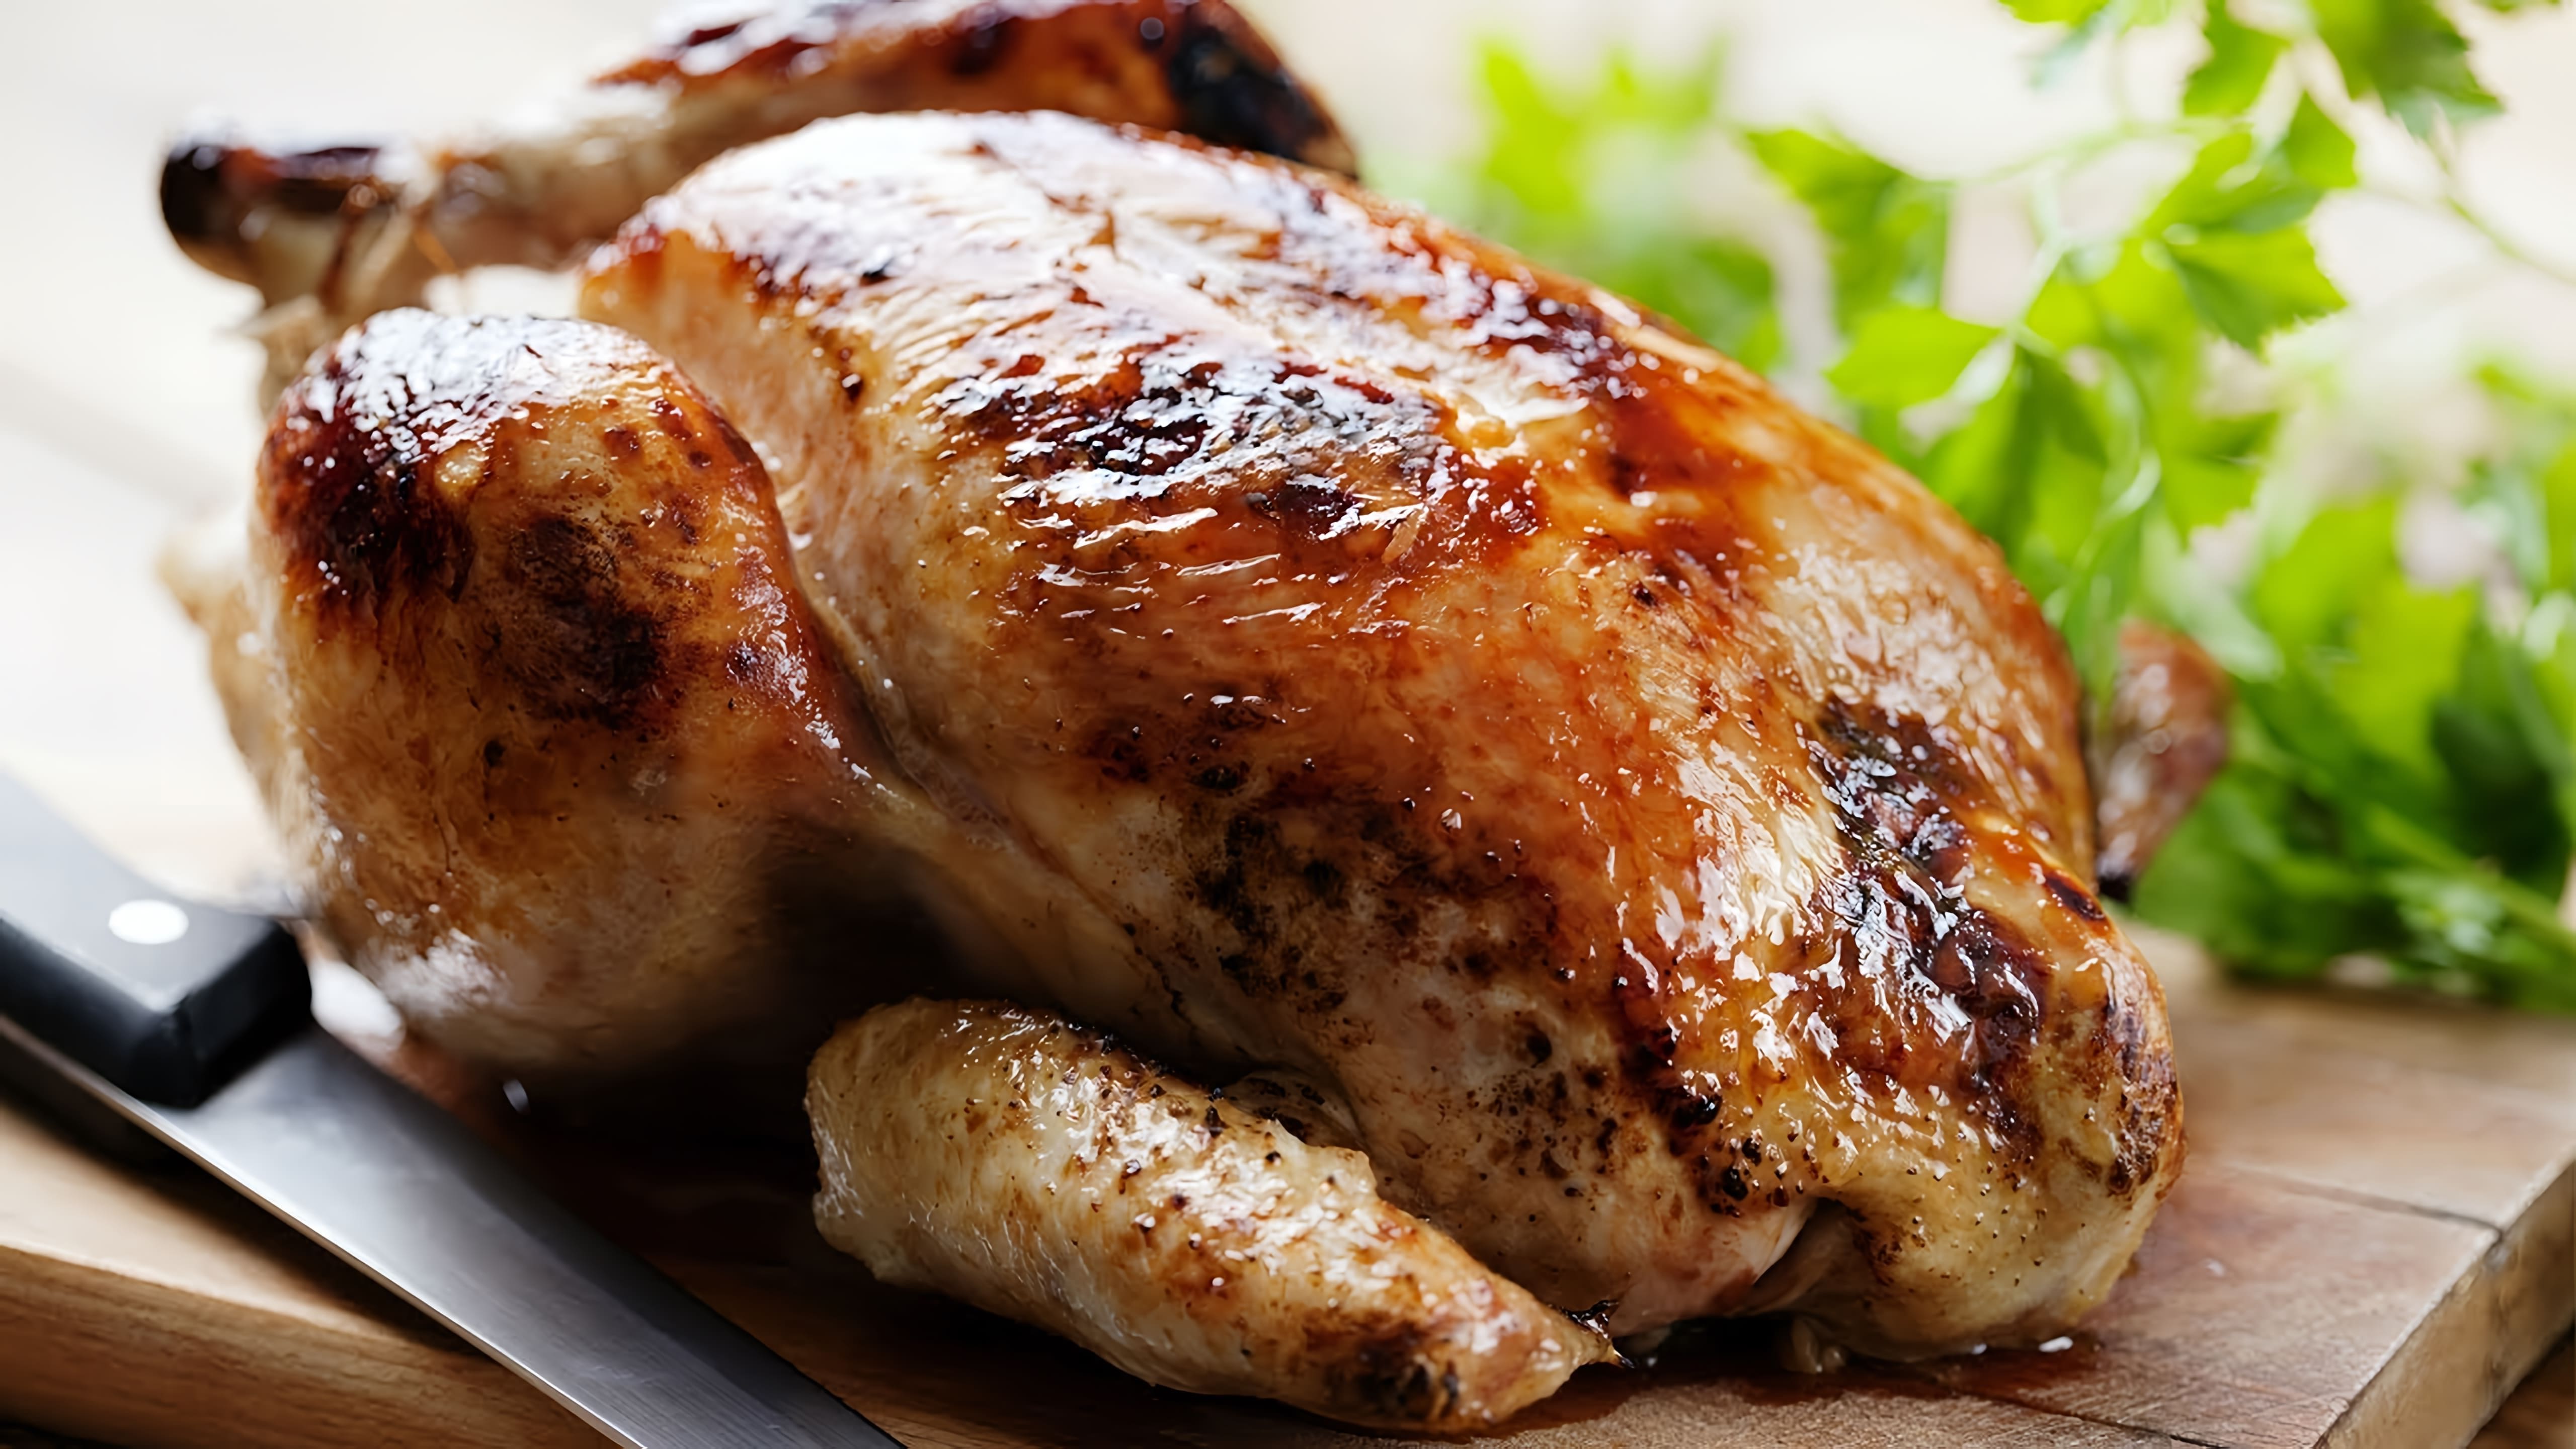 В данном видео демонстрируется рецепт приготовления курицы в духовке с соевым соусом